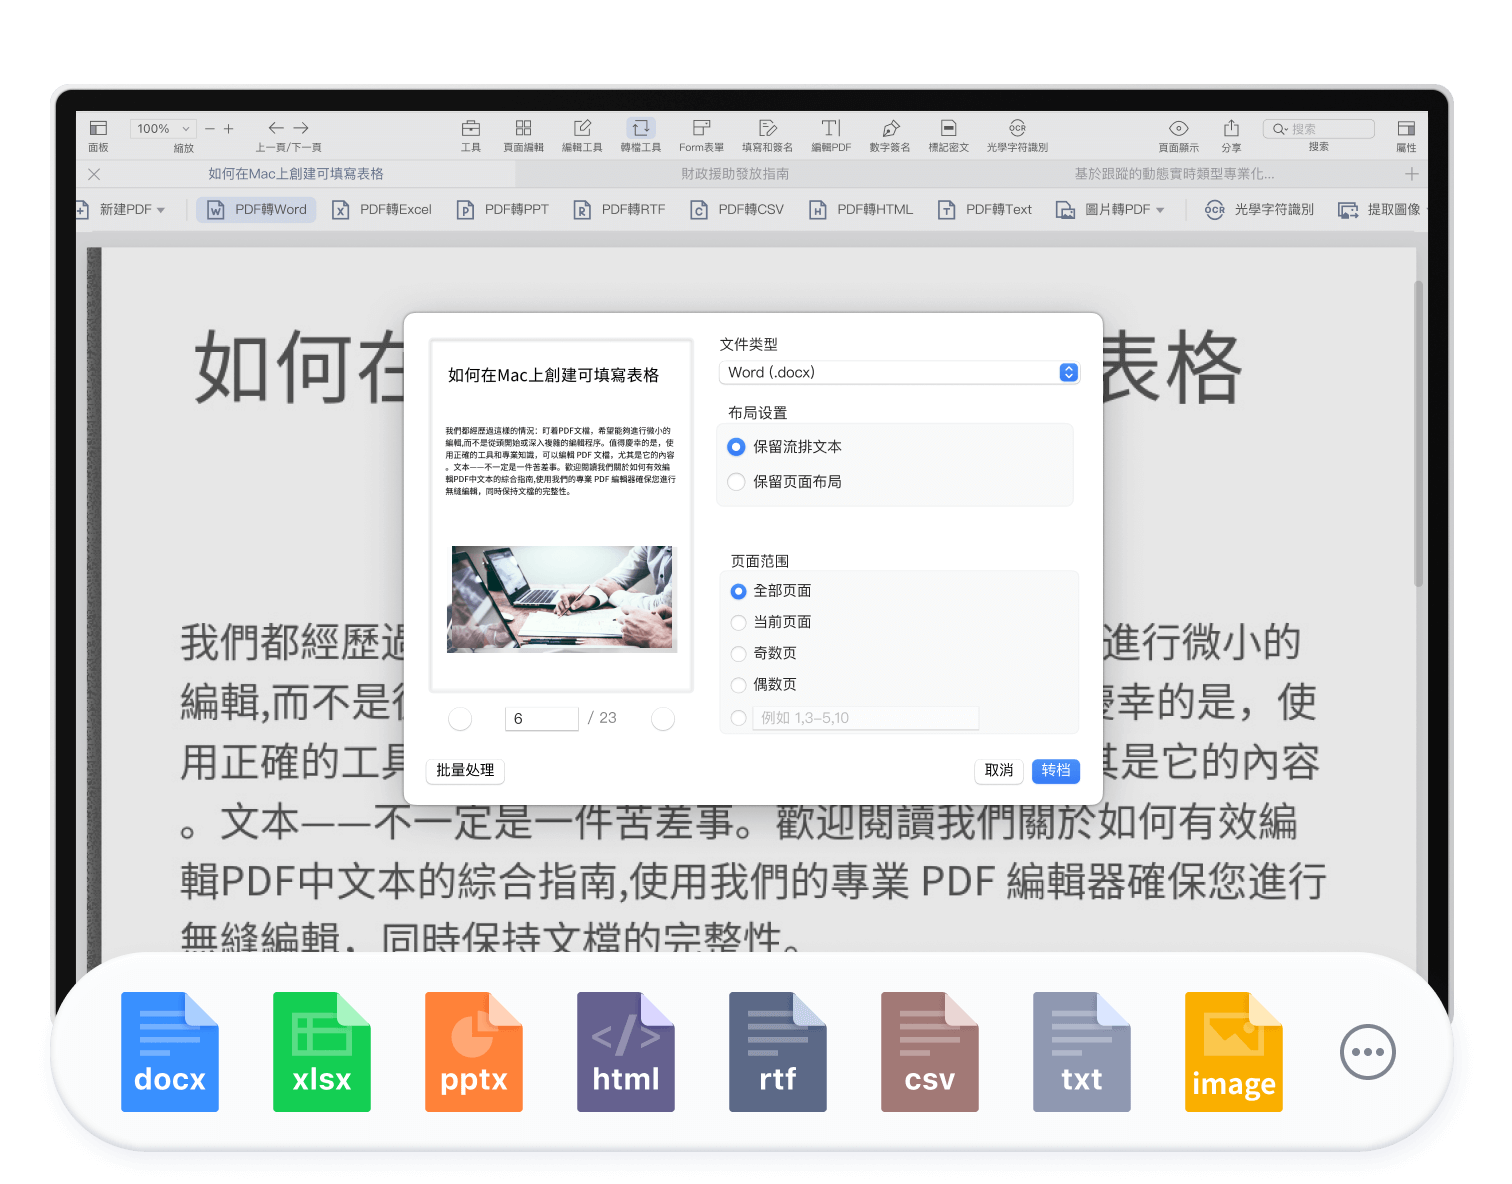 無縫轉換PDF格式